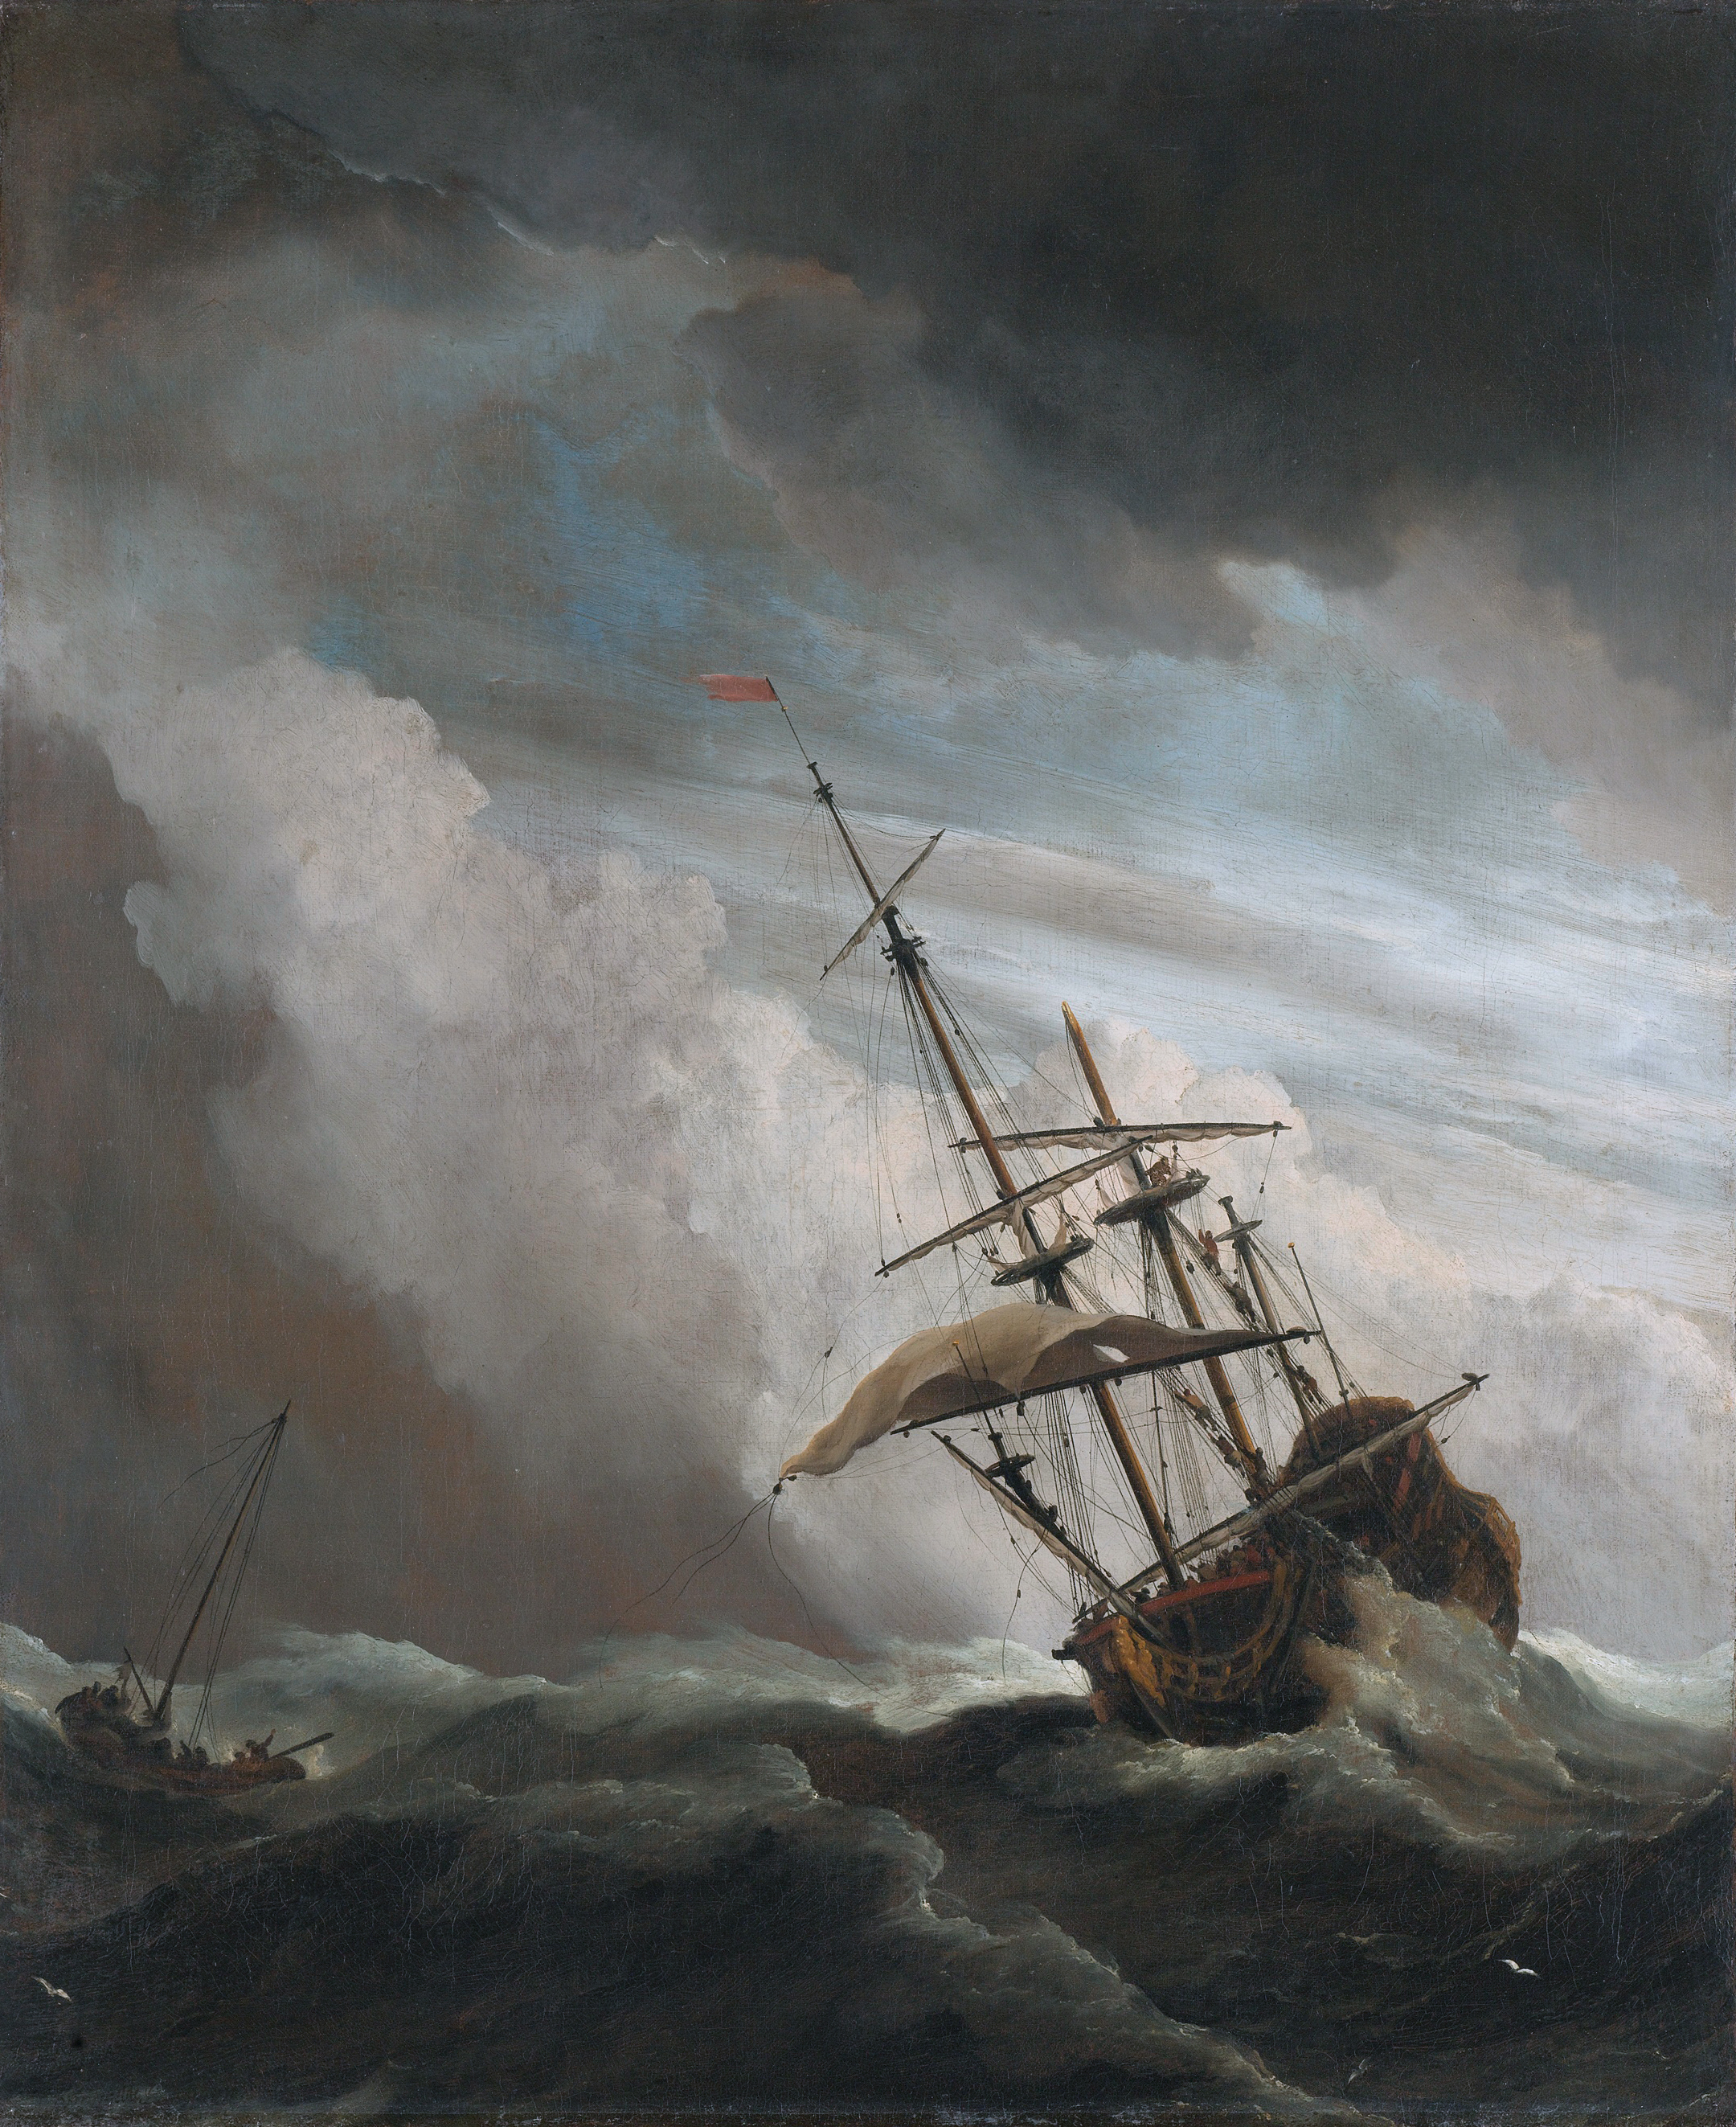 De_Windstoot_-_A_ship_in_need_in_a_raging_storm_(Willem_van_de_Velde_II,_1707)